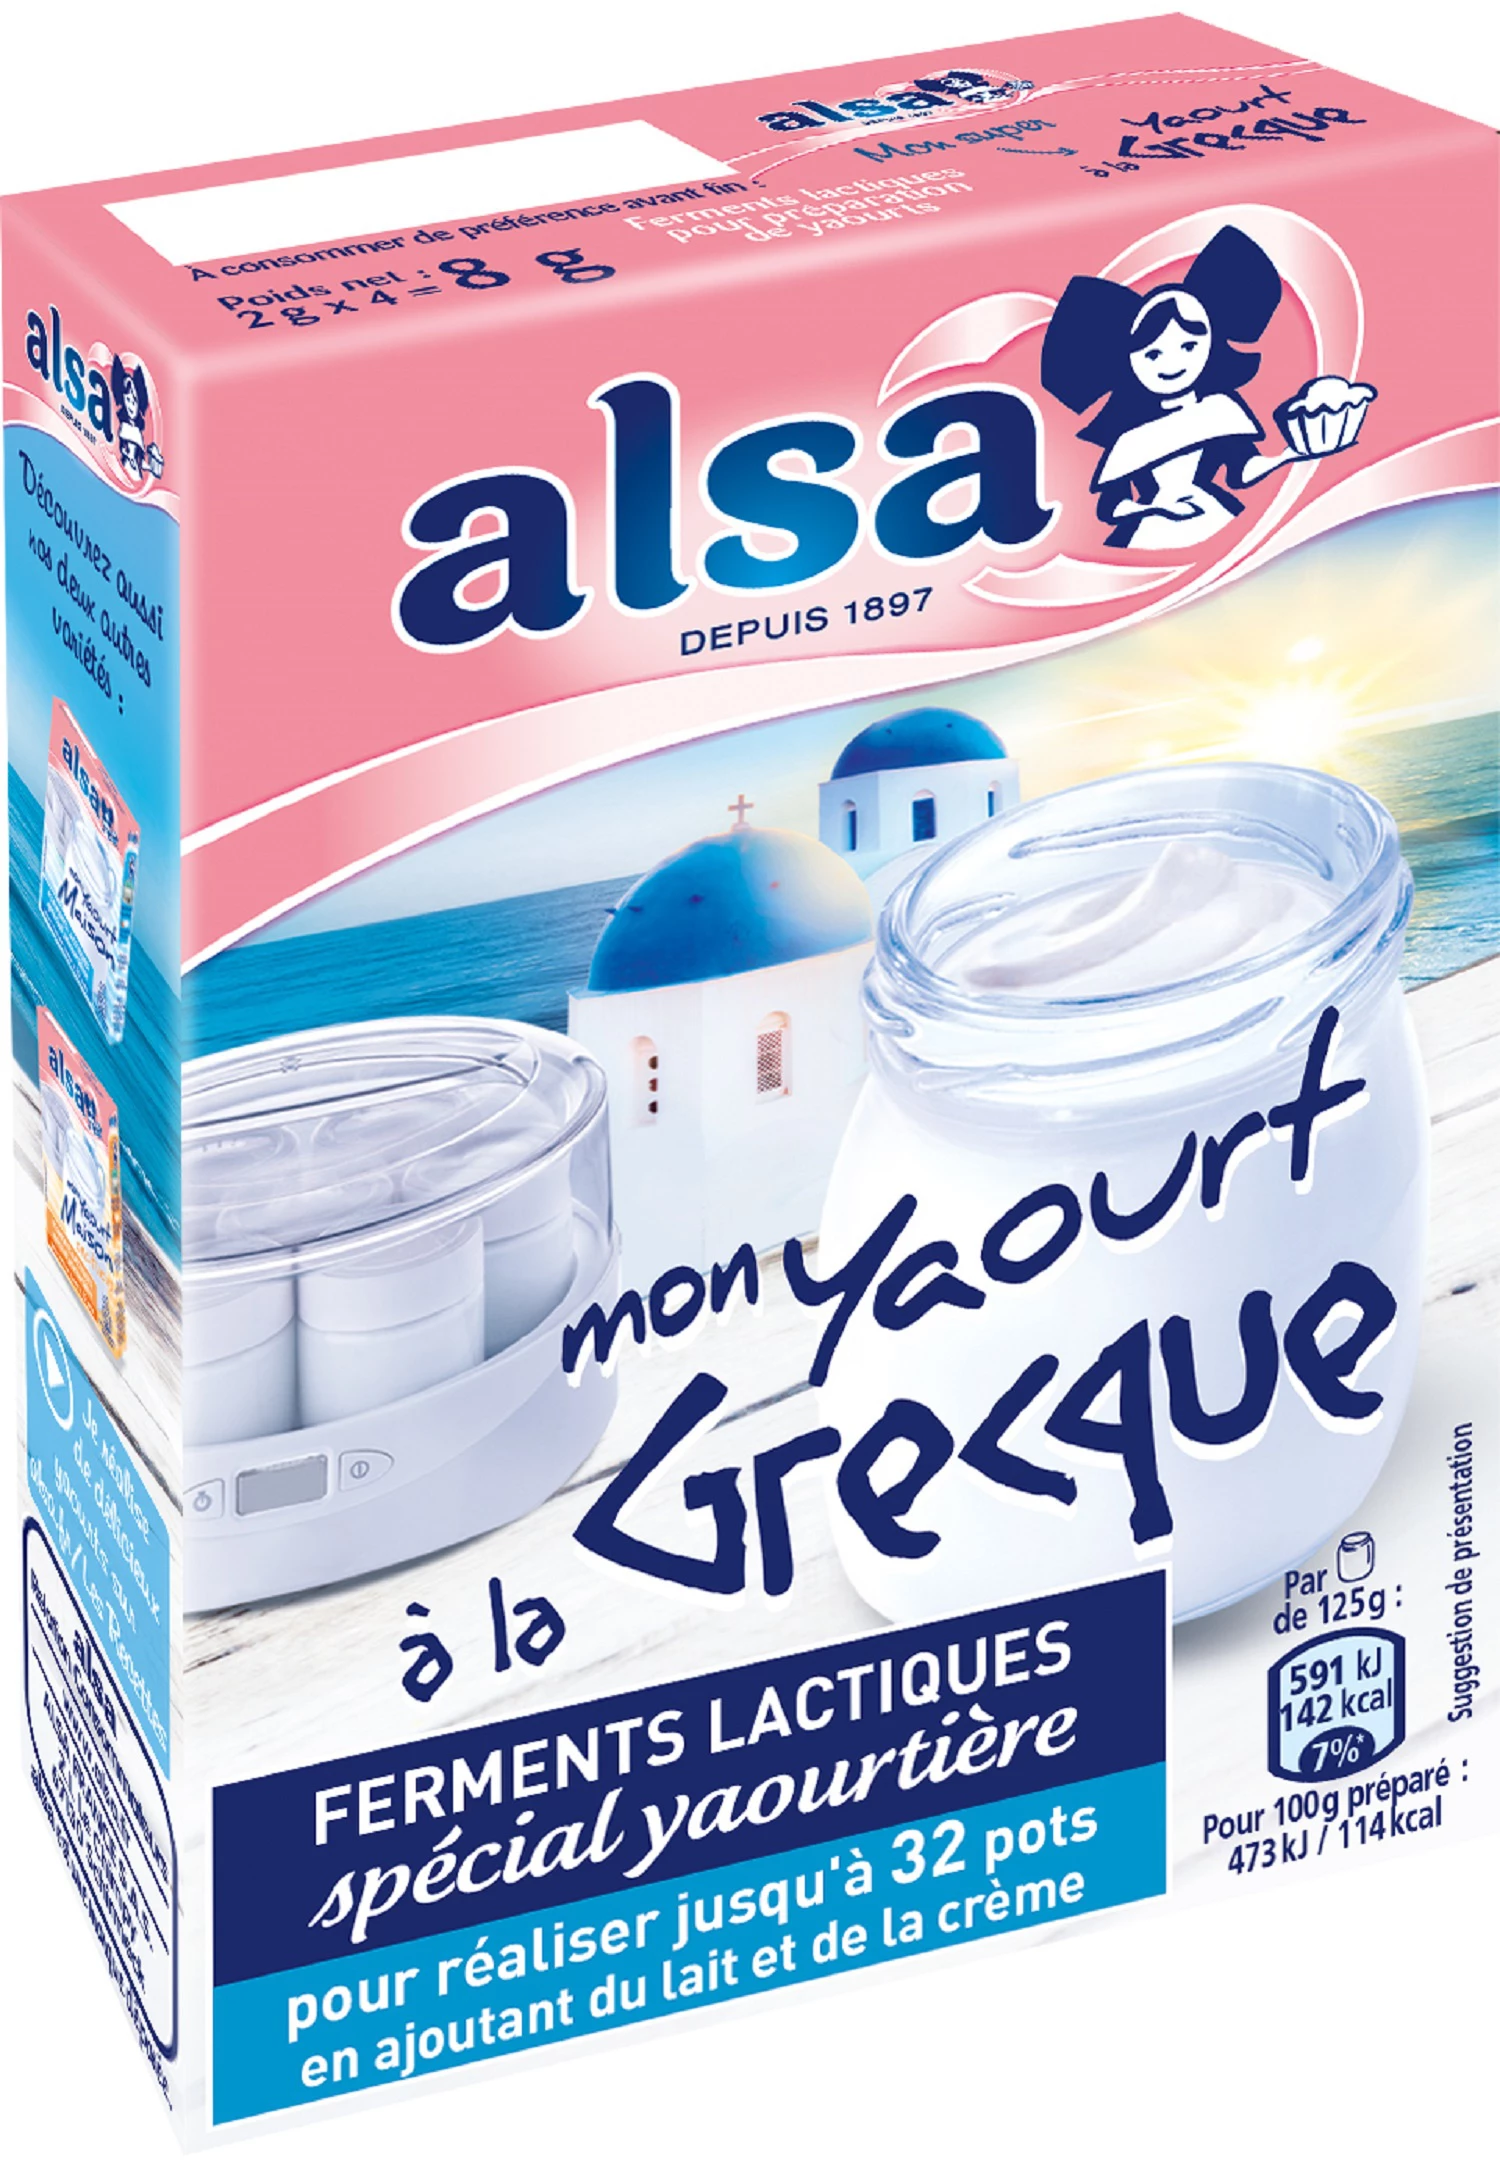 Ferments lactiques pour yaourtière Mon Yaourt Maison ALSA, 8g - Super U,  Hyper U, U Express 